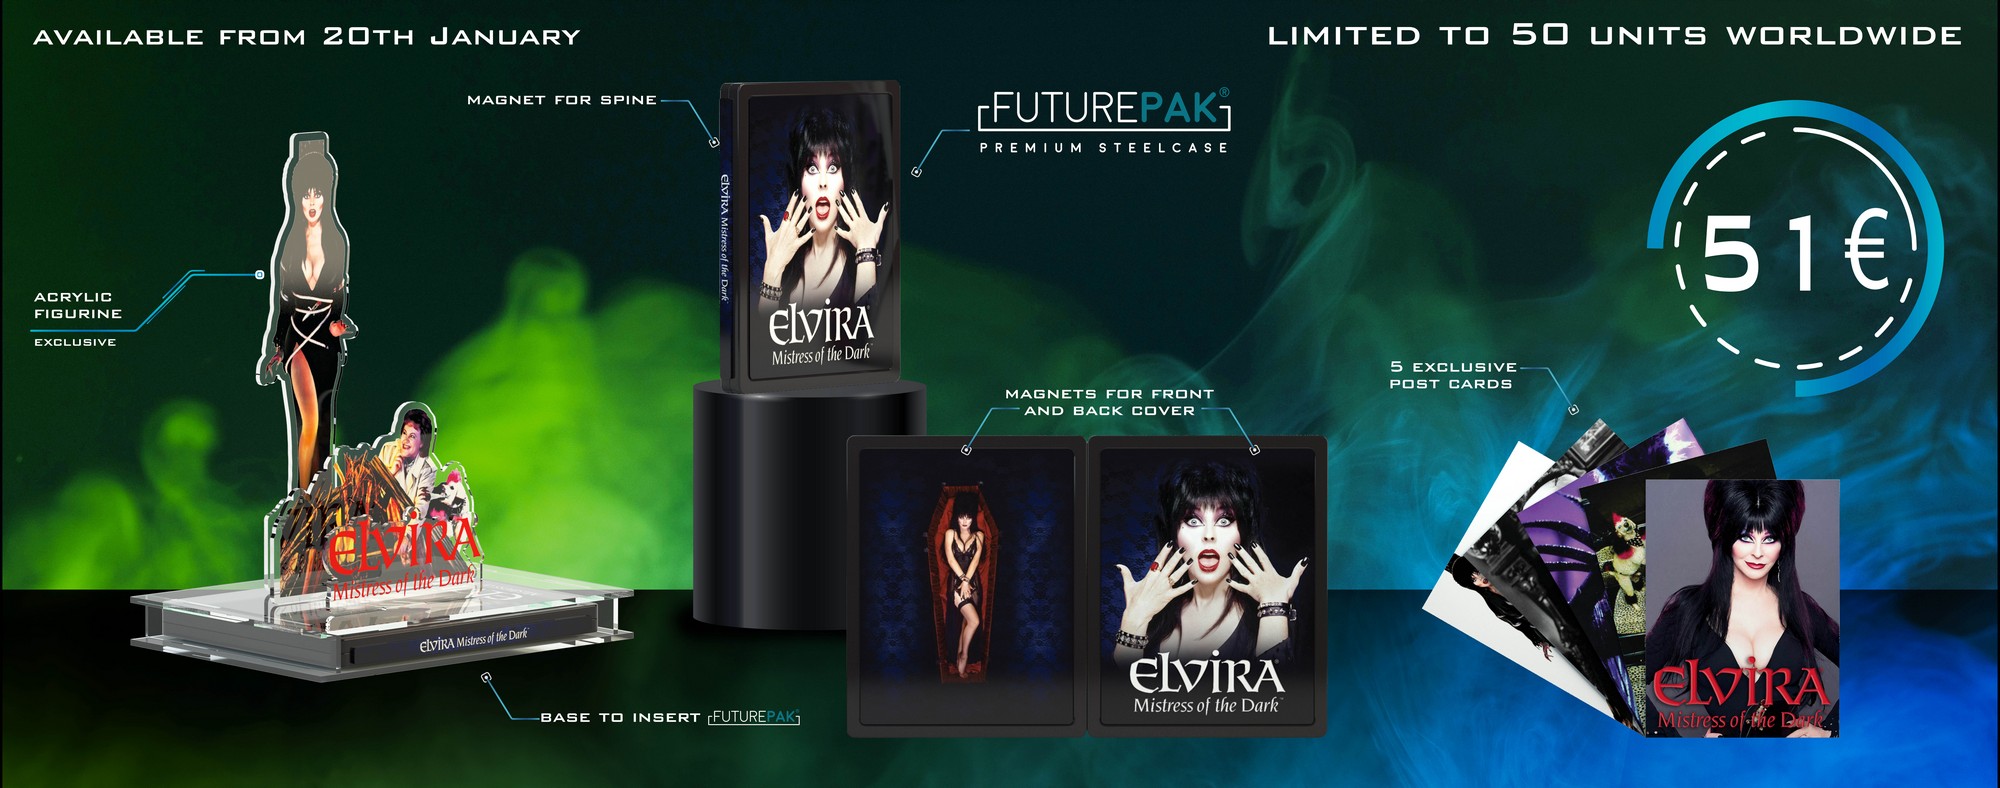 Elvira-2-picture 4